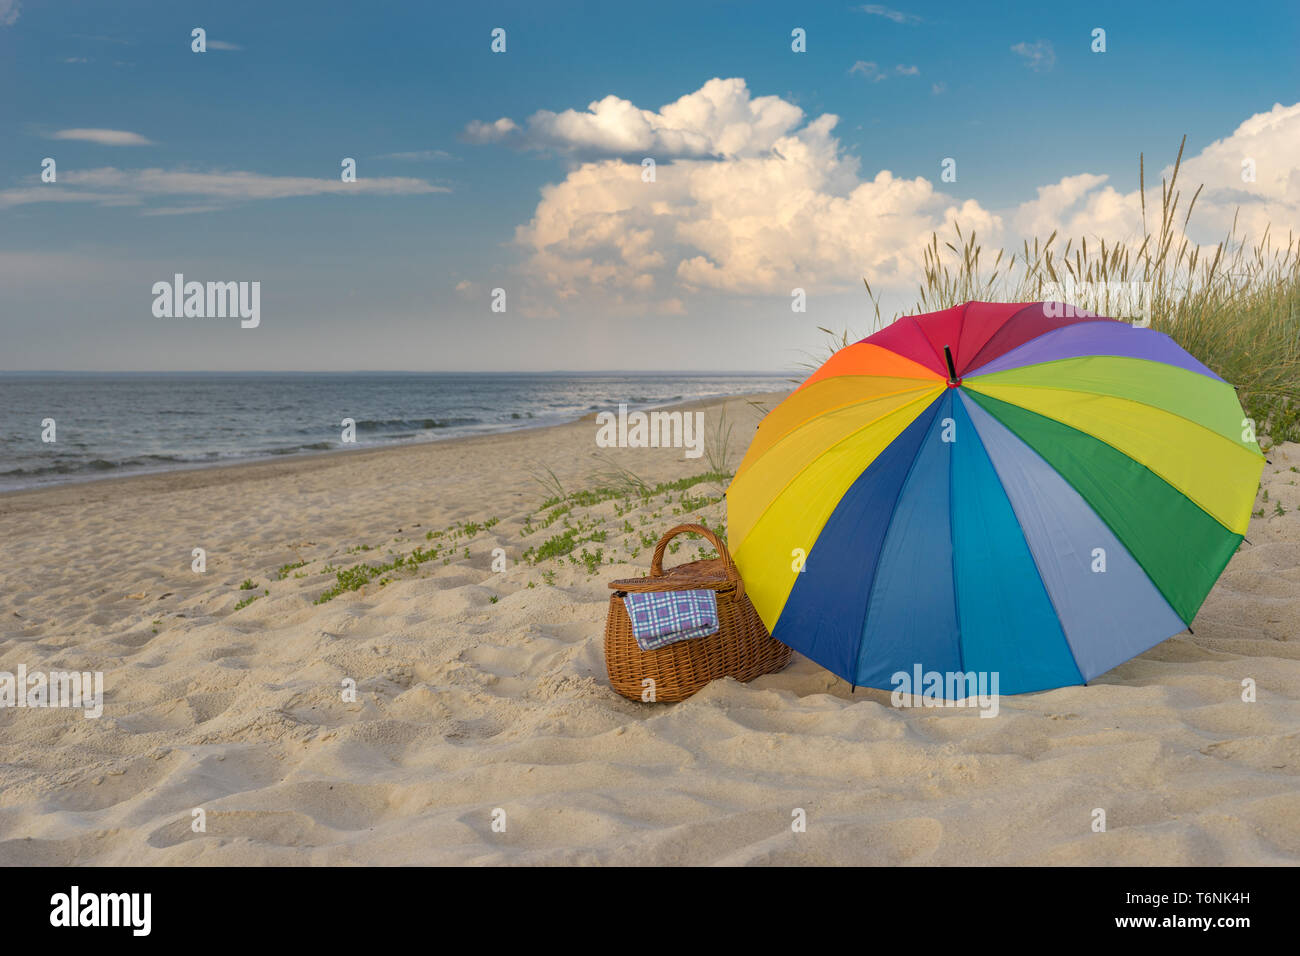 Paraguas multicolores y cesta de picnic frente a playa escénica y nubes, escapada de fin de semana, concepto Foto de stock